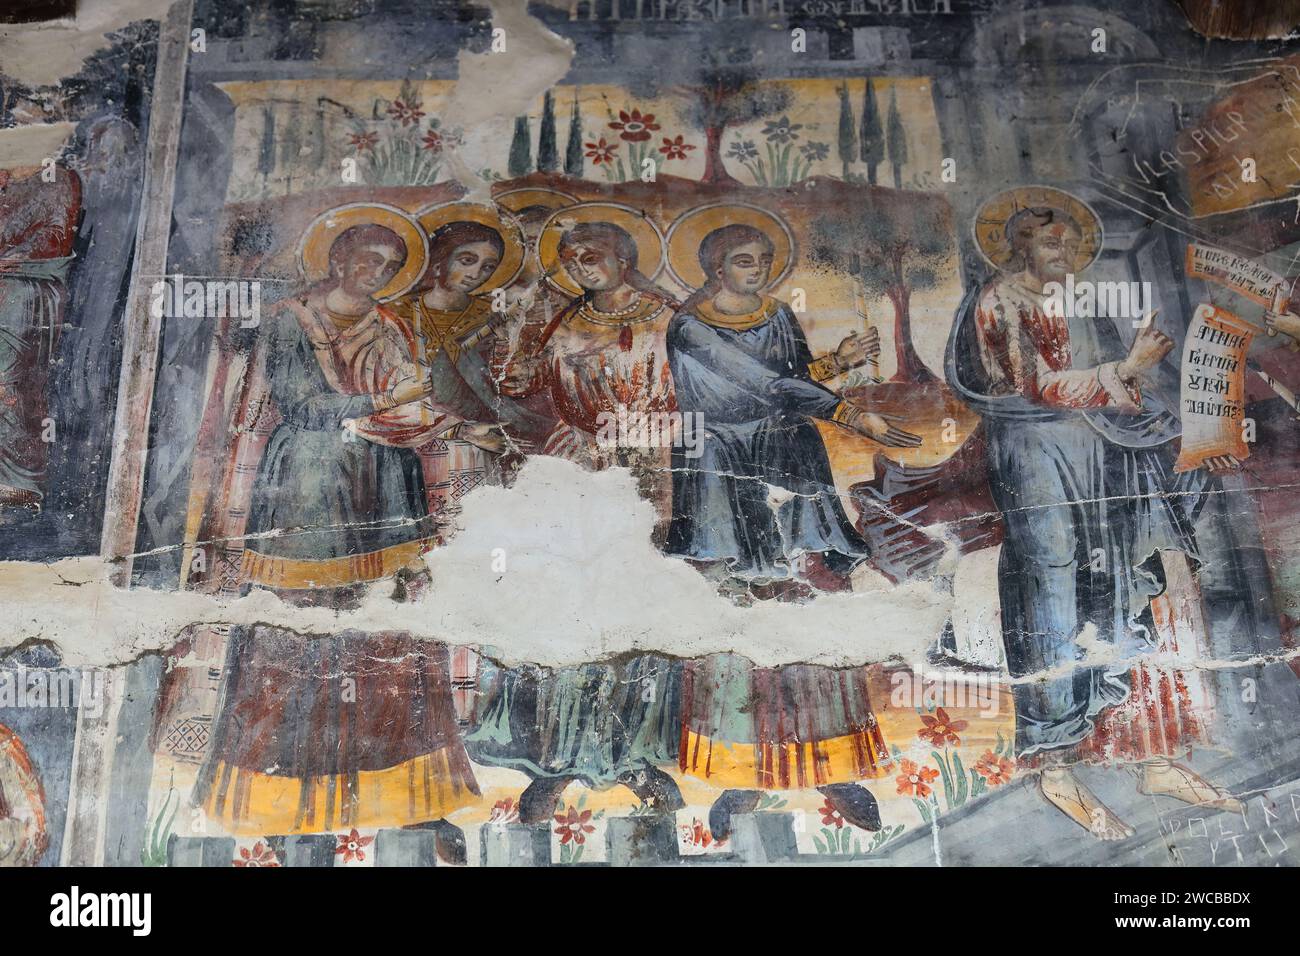 228 affreschi murali nella chiesa di Santa Maria di Leusa con i suoi murales vandalizzati del 1812 d.C. raffiguranti scene bibliche. Permet-Albania. Foto Stock